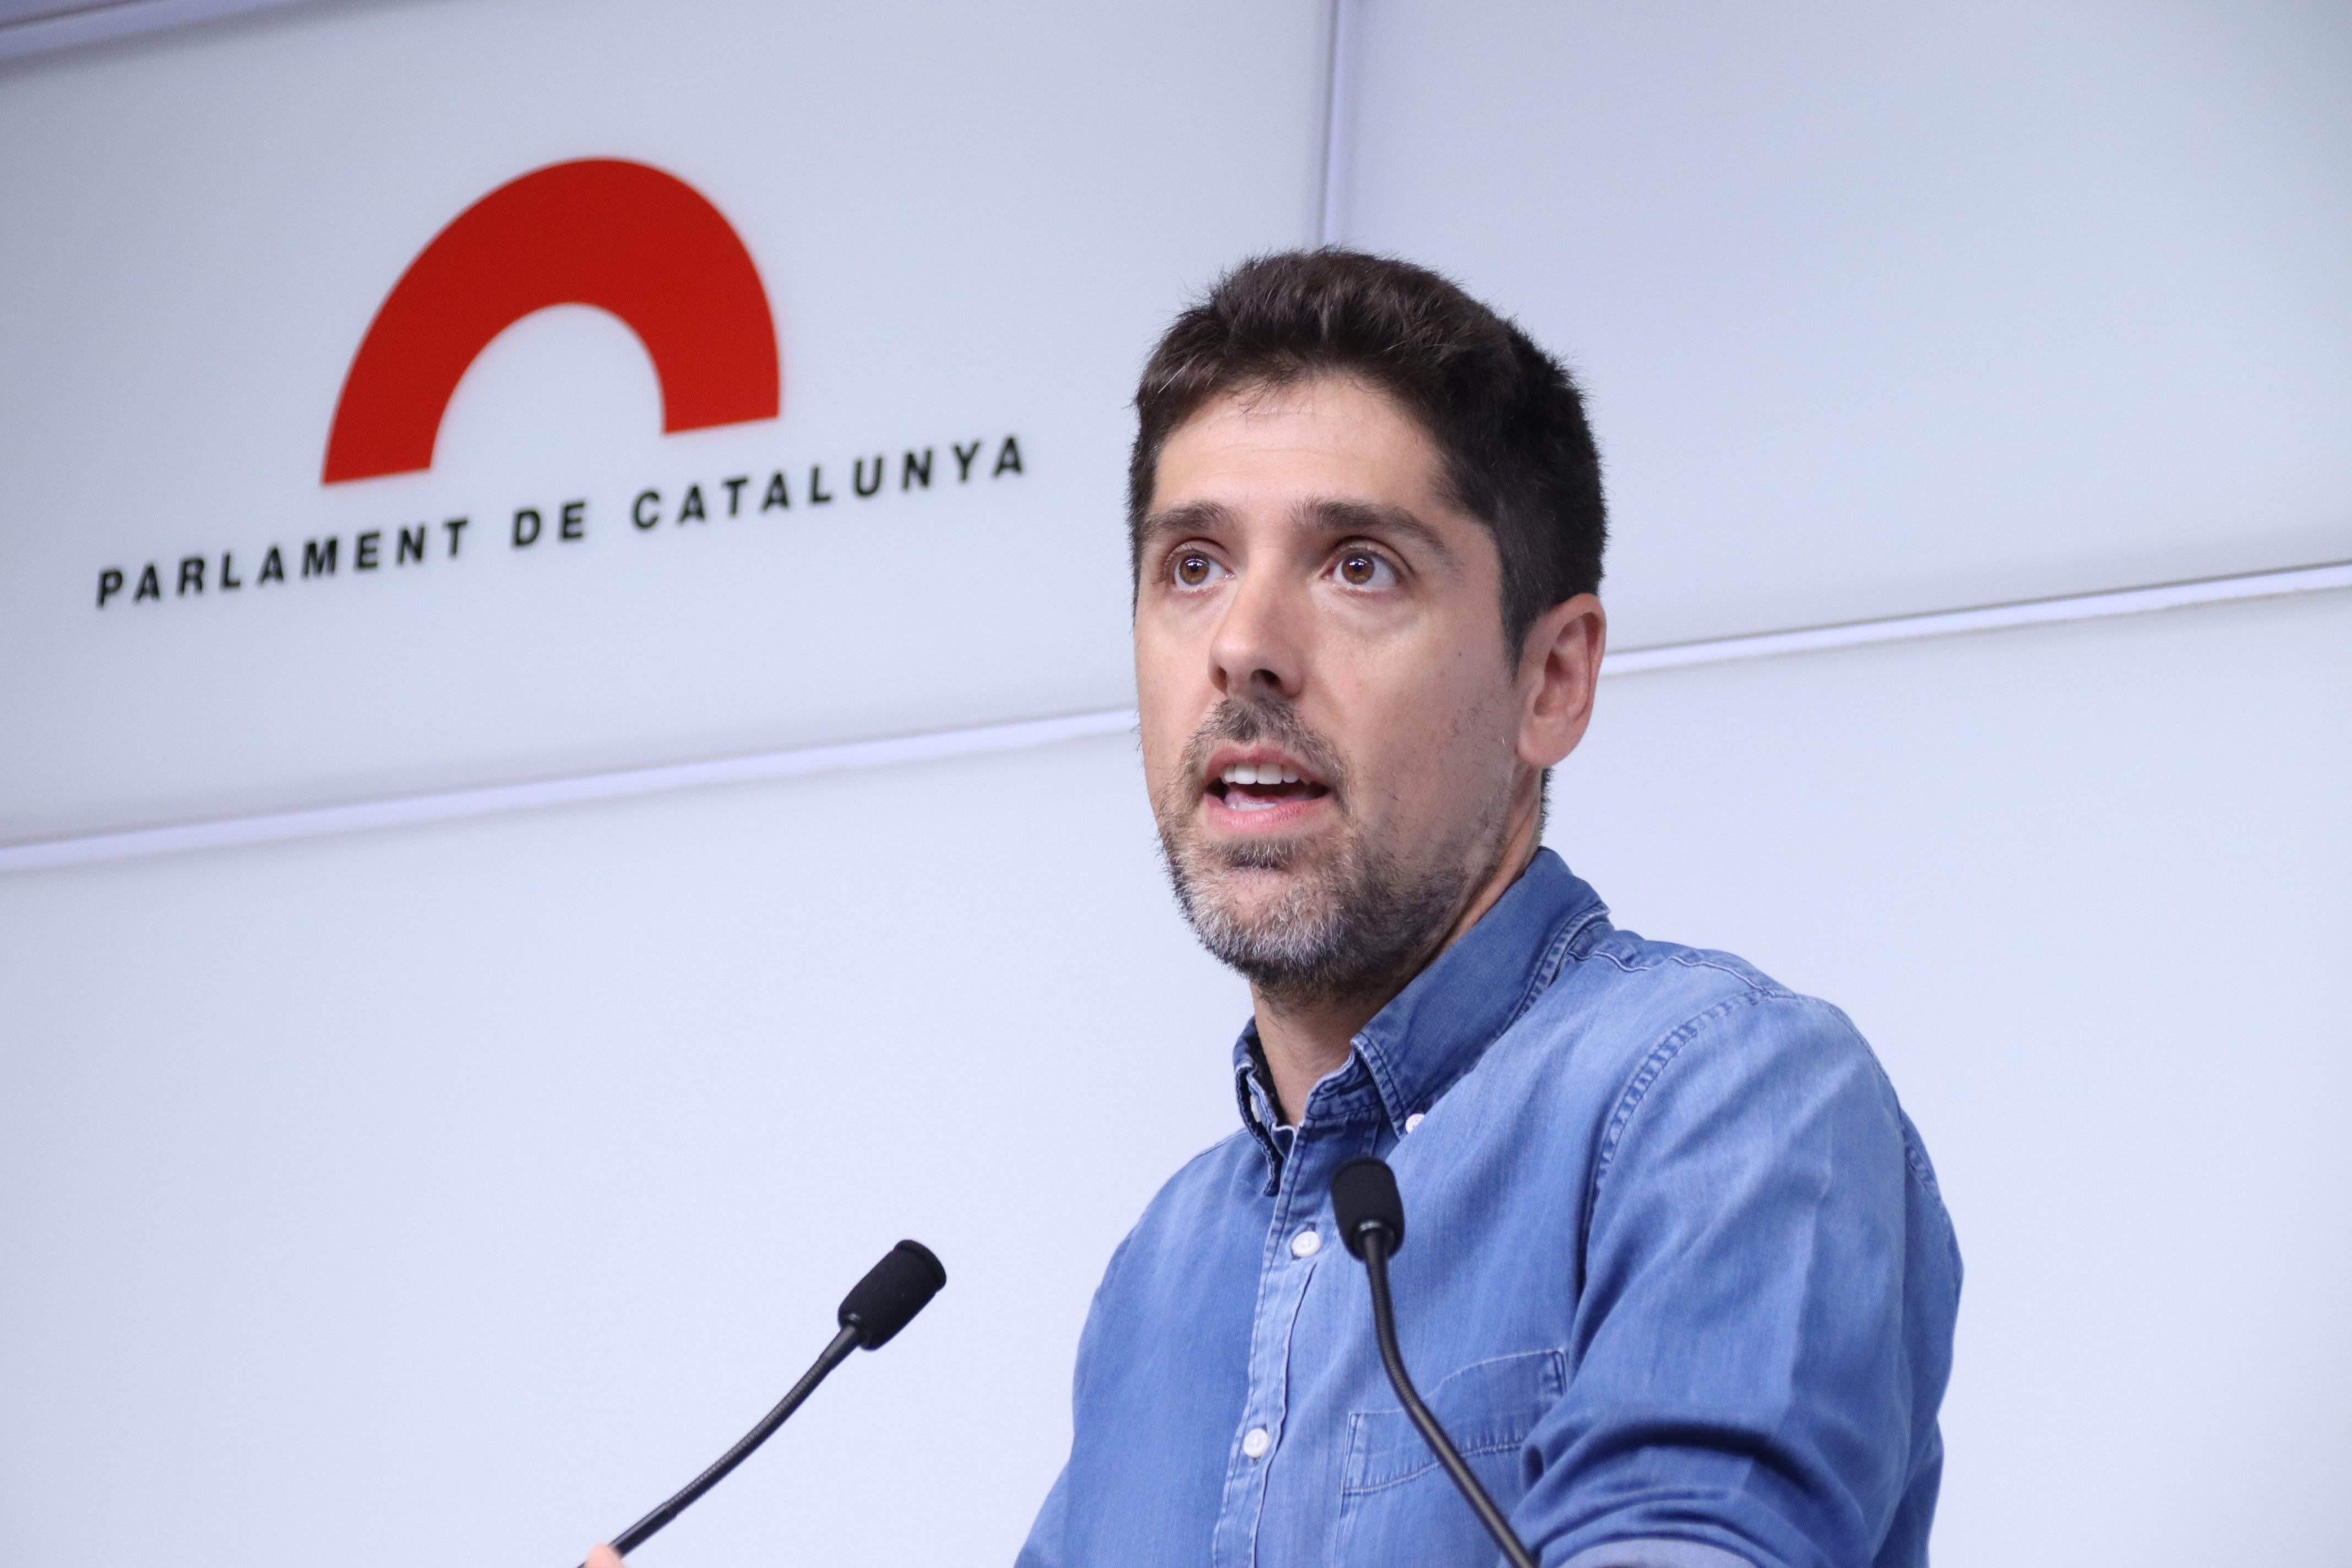 Los comunes celebran la reunión entre Puigdemont y el número 3 del PSOE: "Es el camino a seguir"